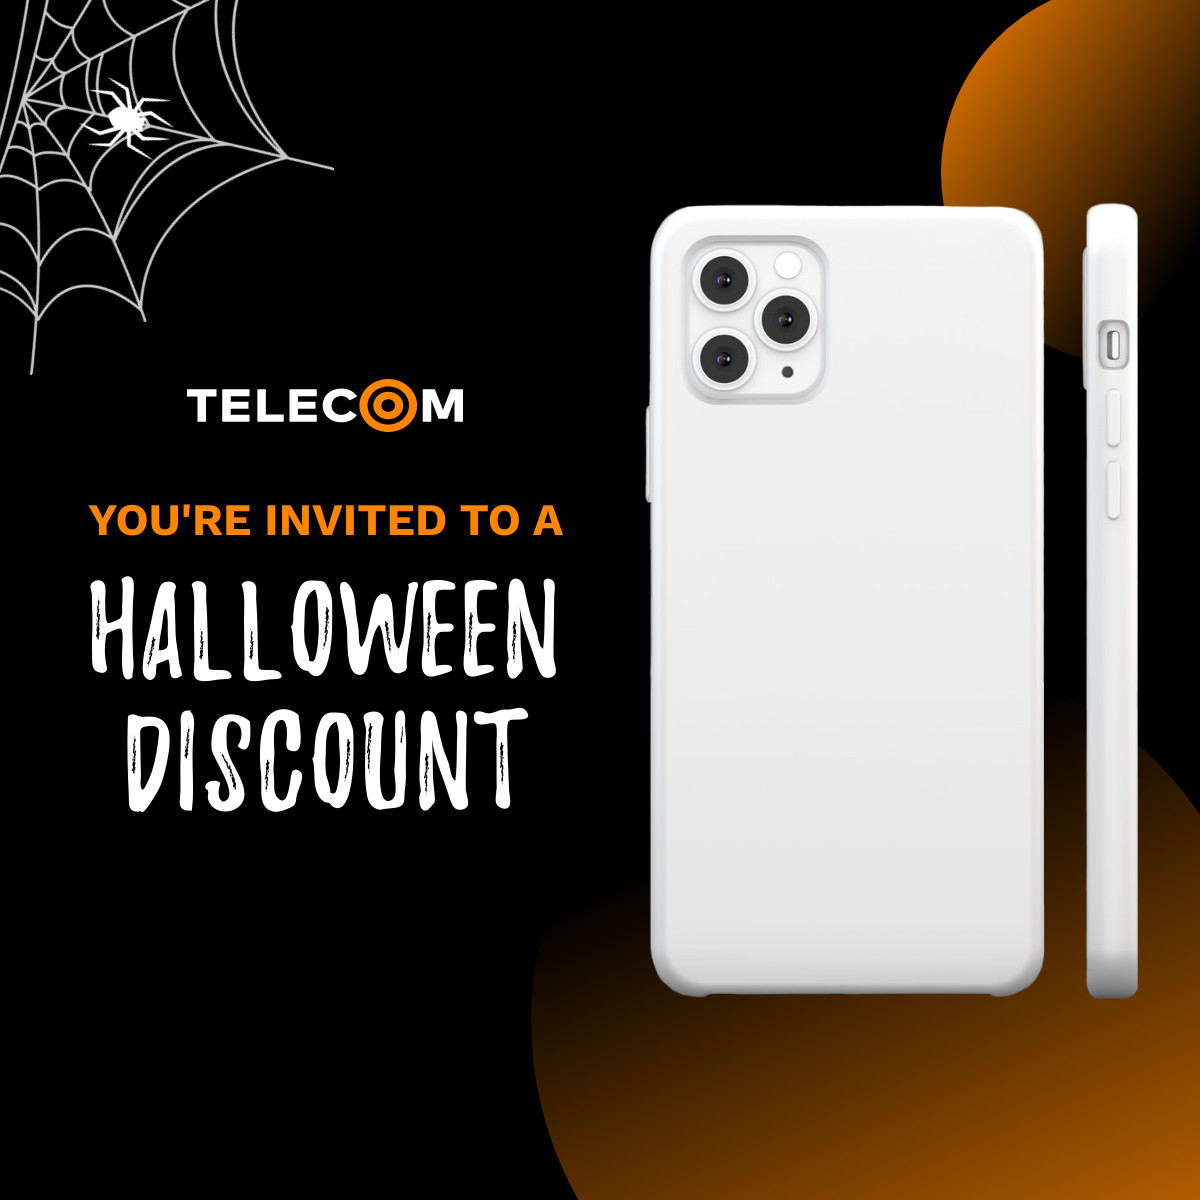 iPhone Halloween Discount 